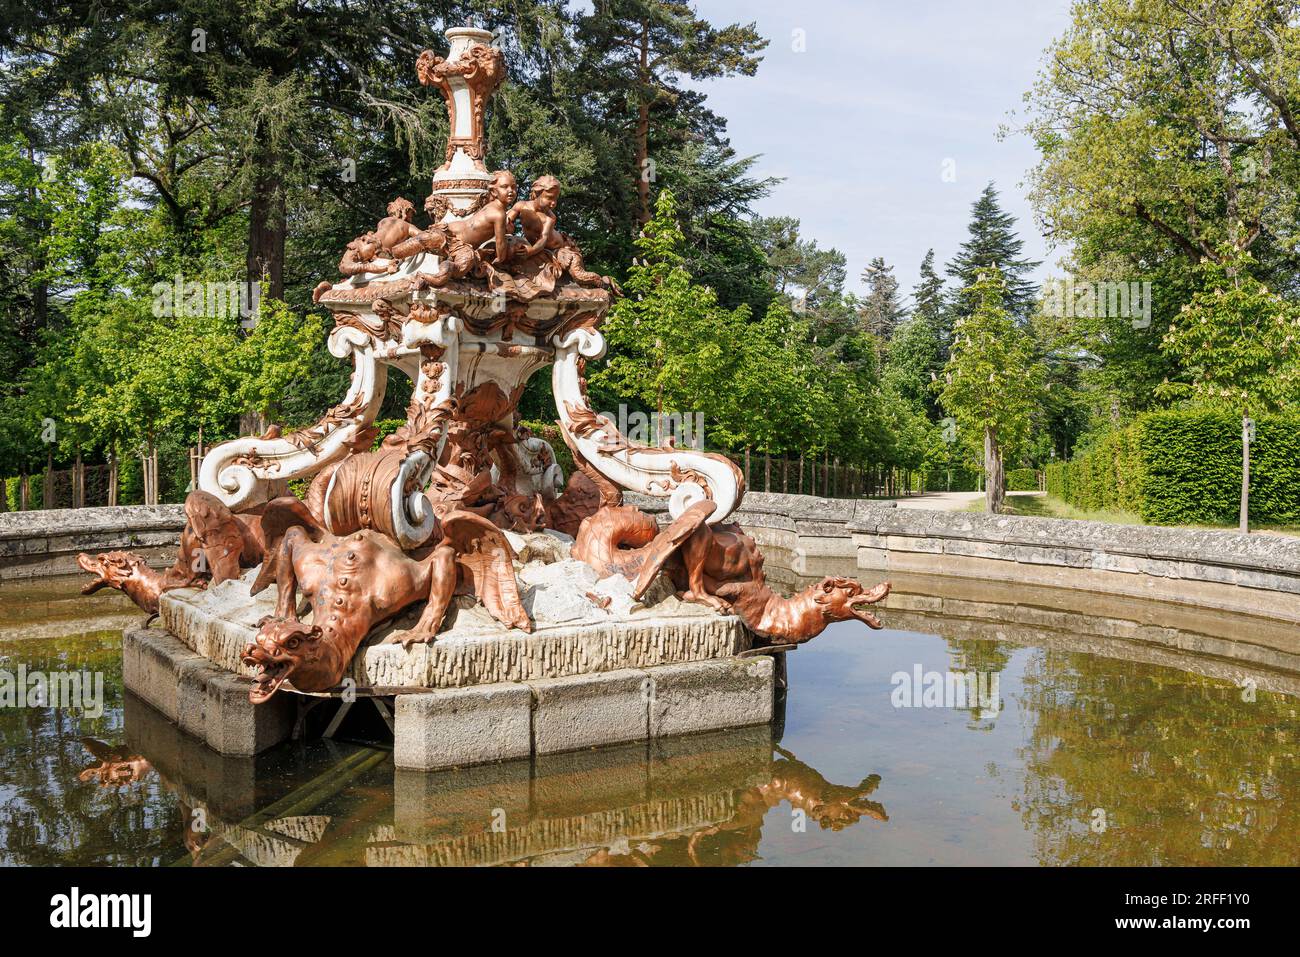 Spain, Castile and Leon, La Granja de San Ildefonso, Royal Palace of La Granja de San Ildefonso gardens, dragon's fountain Stock Photo